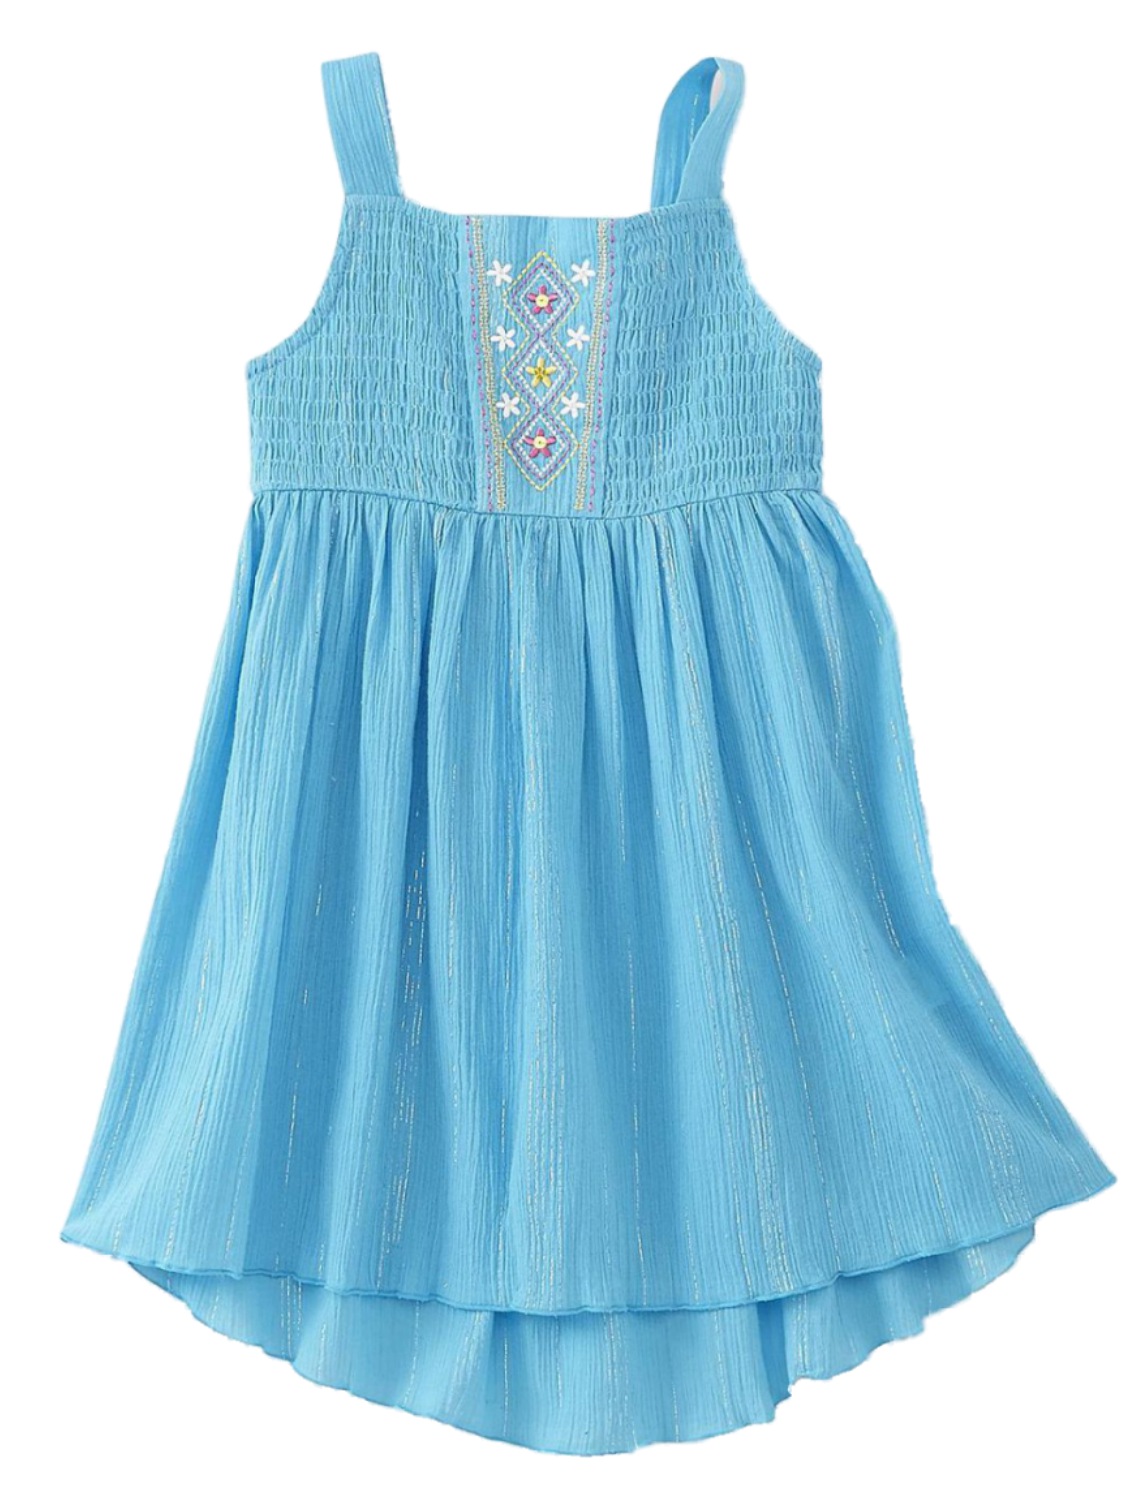 Youngland Toddler Girls Blue & Silver Flowy Sun Dress Sundress 12 Months